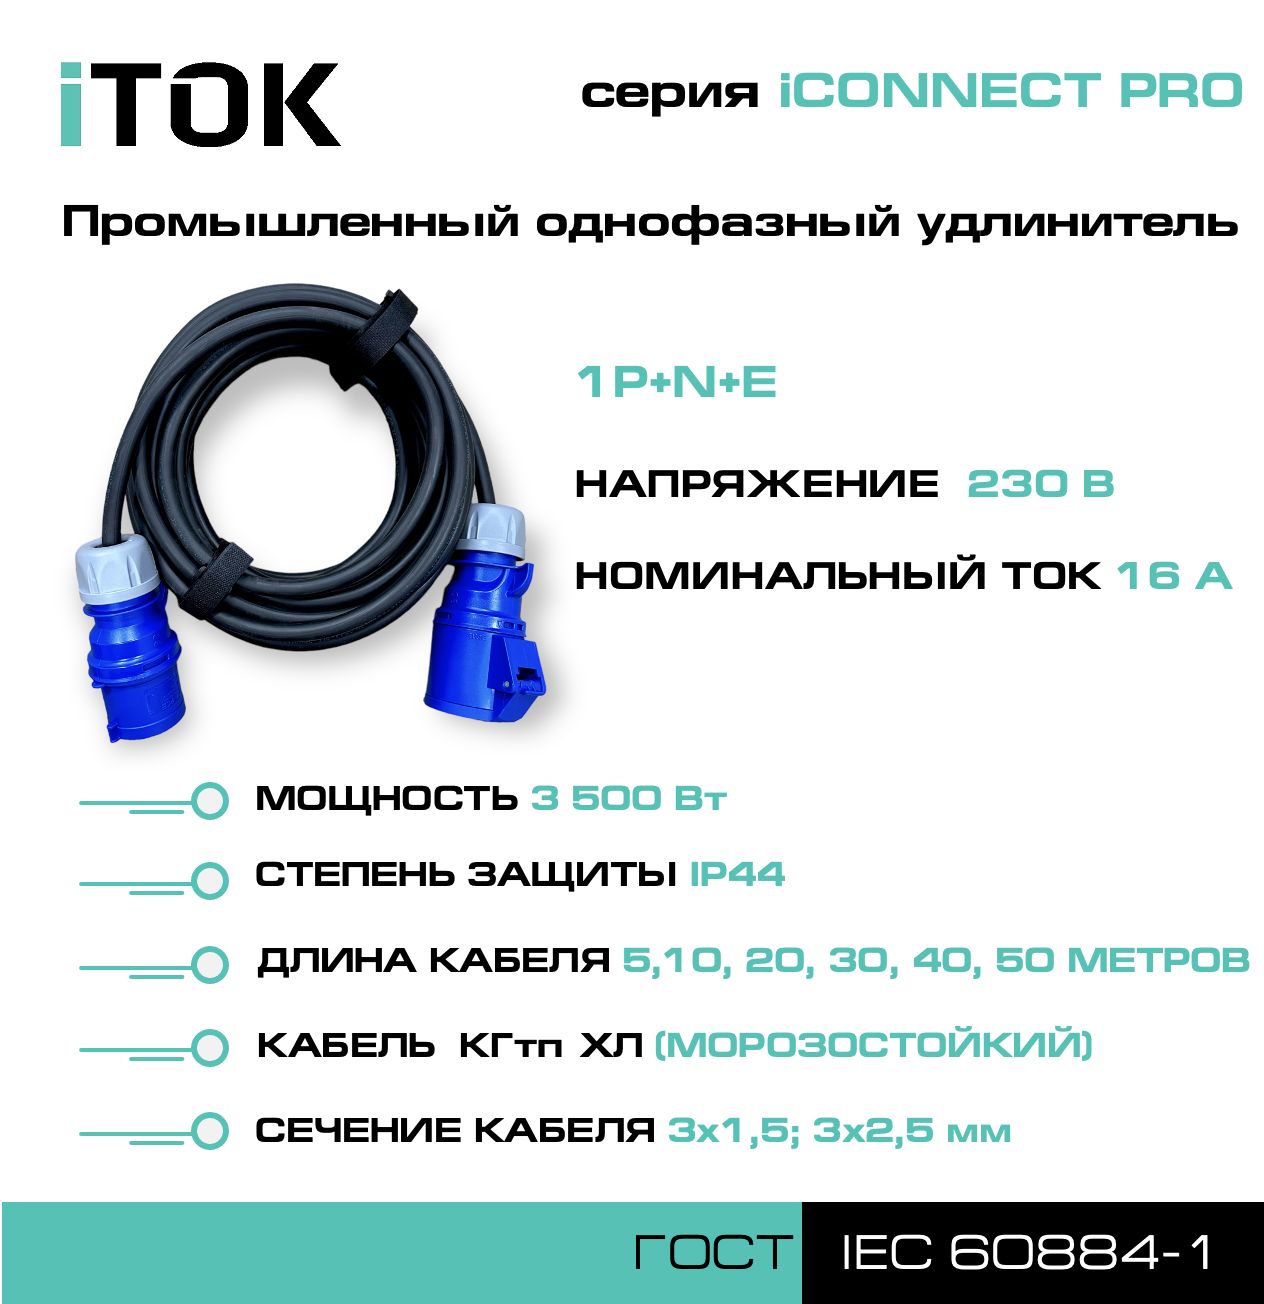 удлинитель силовой с заземлением itok iconnect pro кгтп хл 3х2 5 мм 1 гнездо ip54 5м Удлинитель силовой iTOK iCONNECT PRO 230В 16А 40м КГтп-ХЛ 3х2,5 мм 1P+N+E, IP44